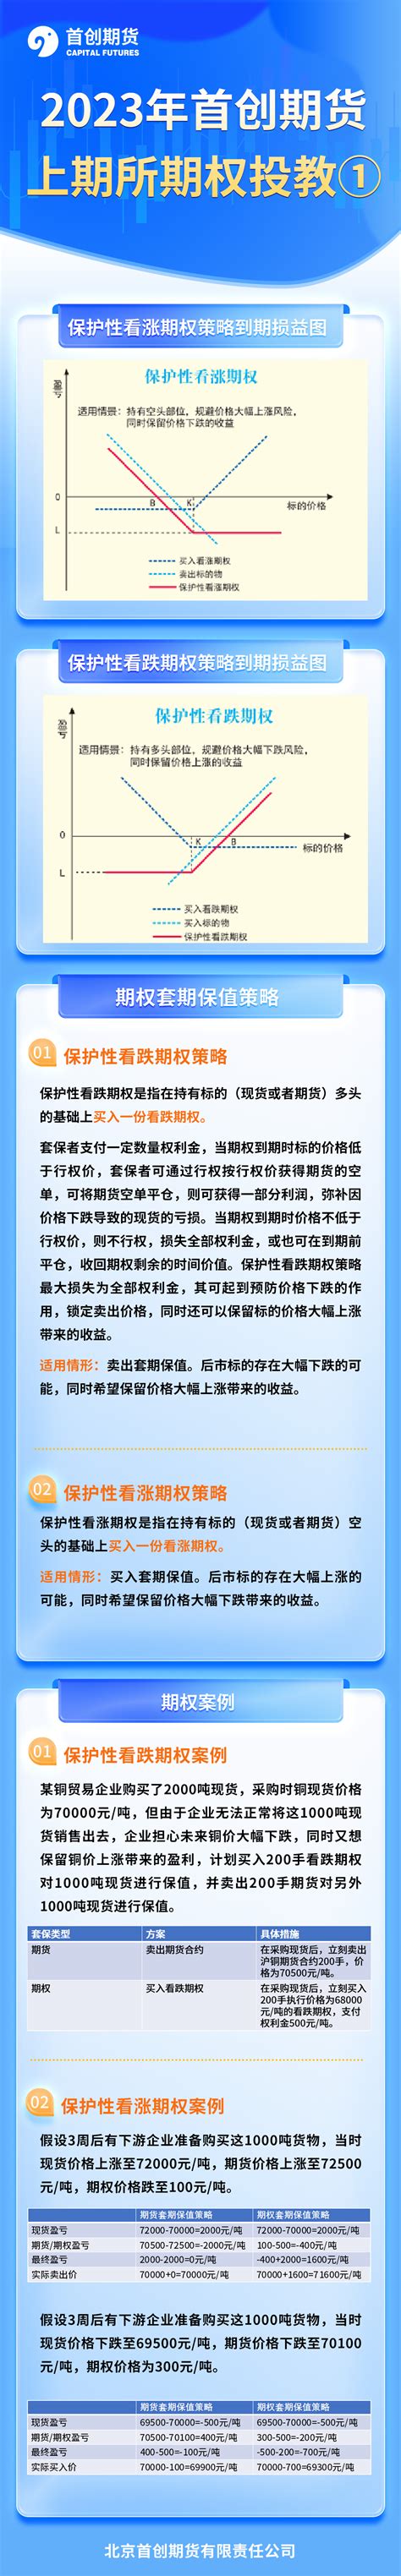 上期所期权小课堂 双限期权组合策略_欢迎您访问北京首创期货官方网站